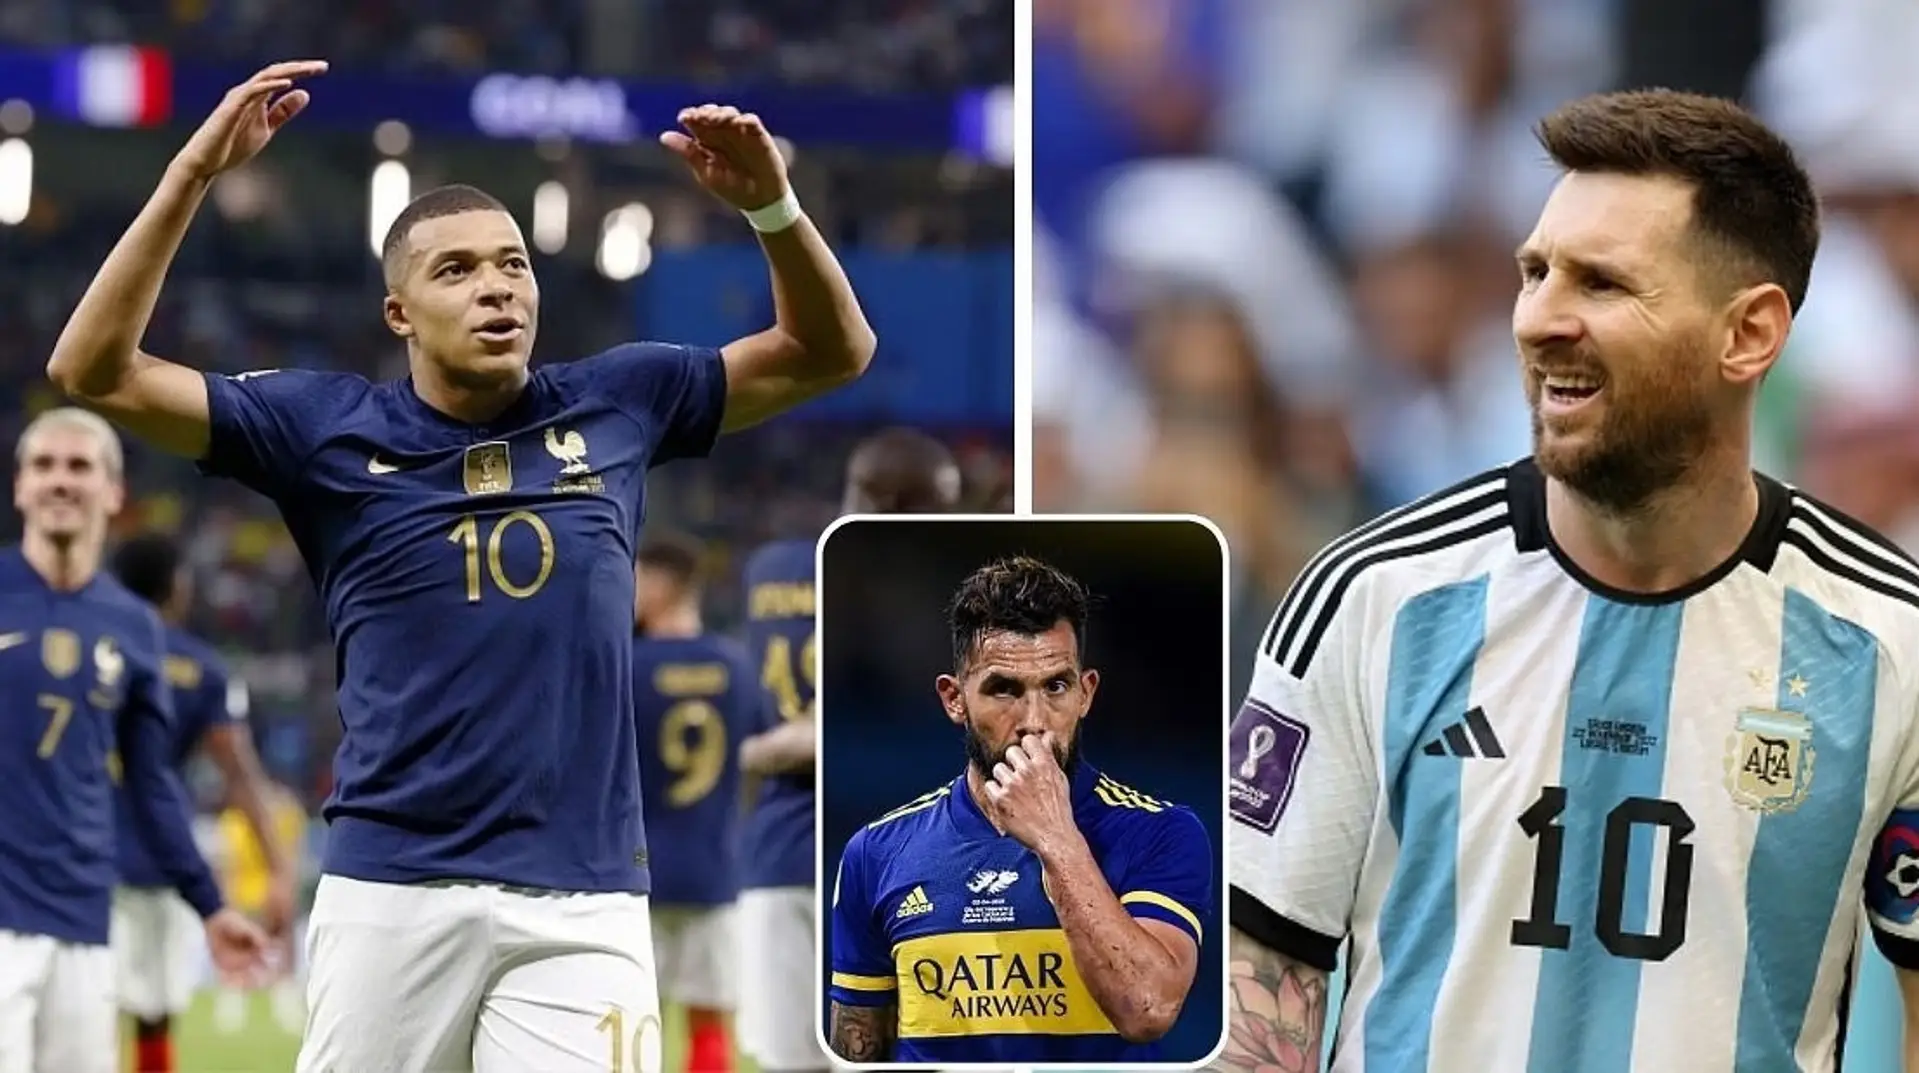 "Ich habe Leo Messi keine SMS geschickt und Frankreich bei der WM verfolgt": Carlos Tevez überraschte die Argentinier mit seinem Geständnis  